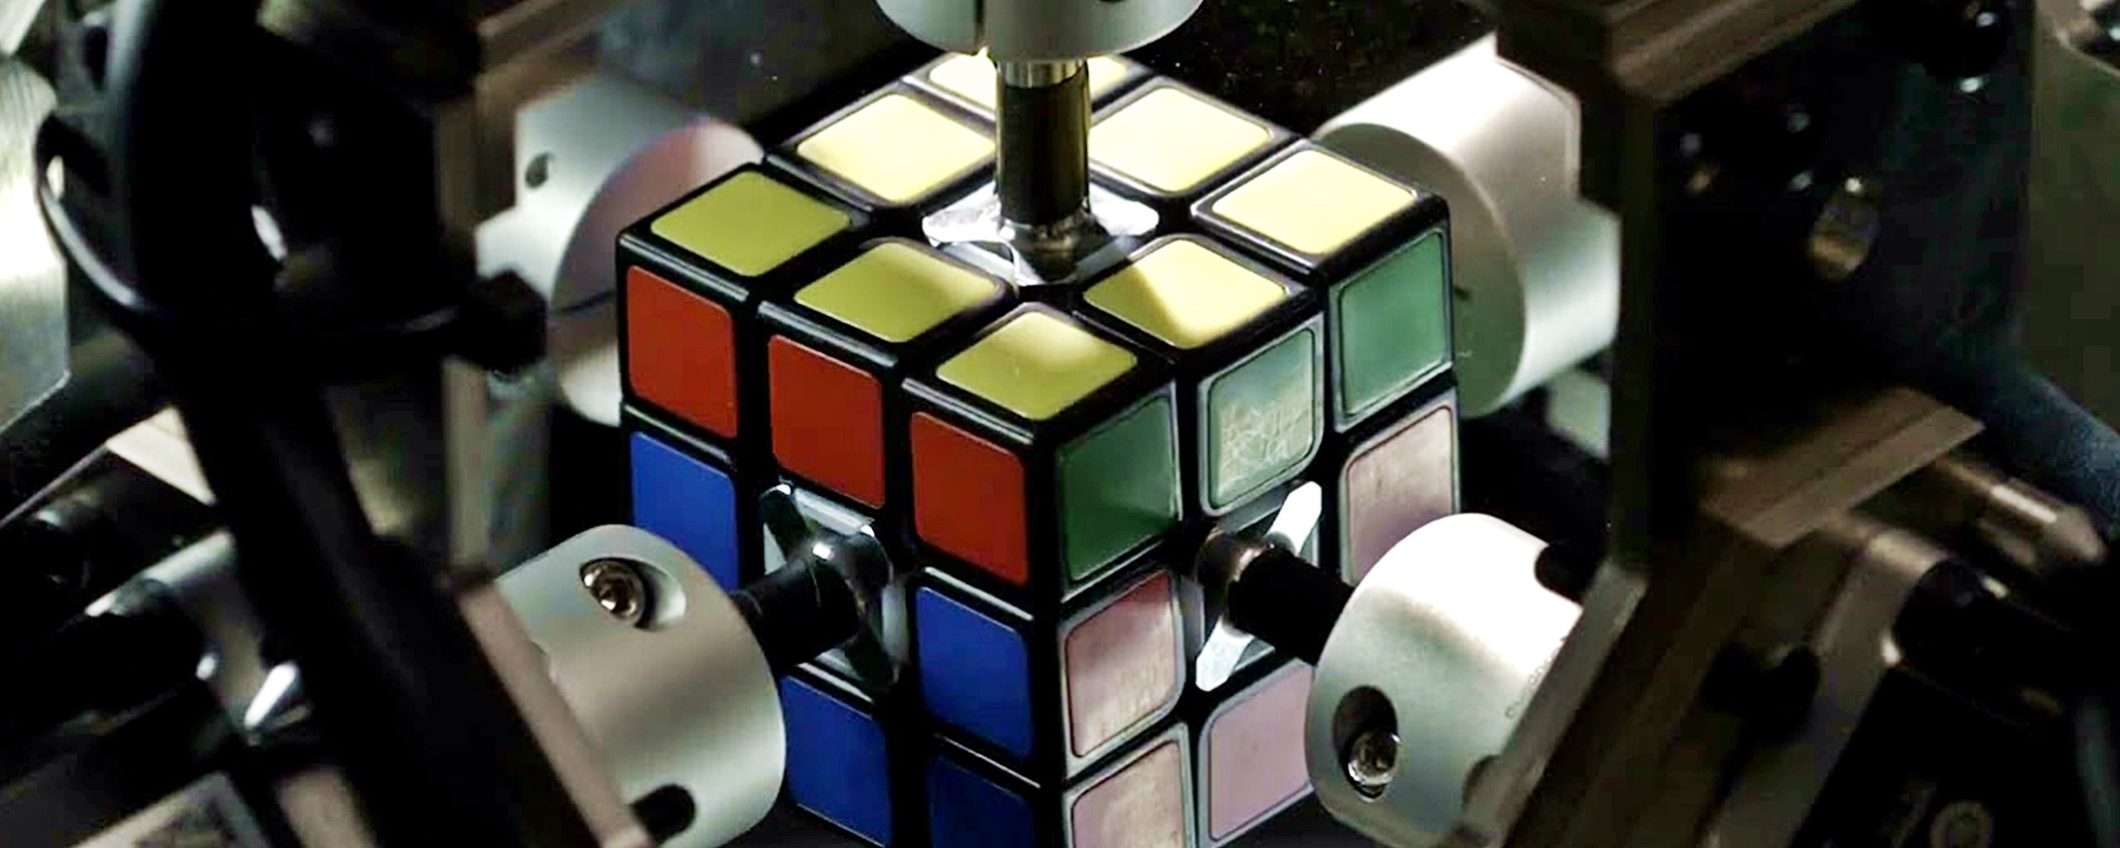 Robot Mitsubishi risolve il cubo di Rubik in meno di 1 secondo